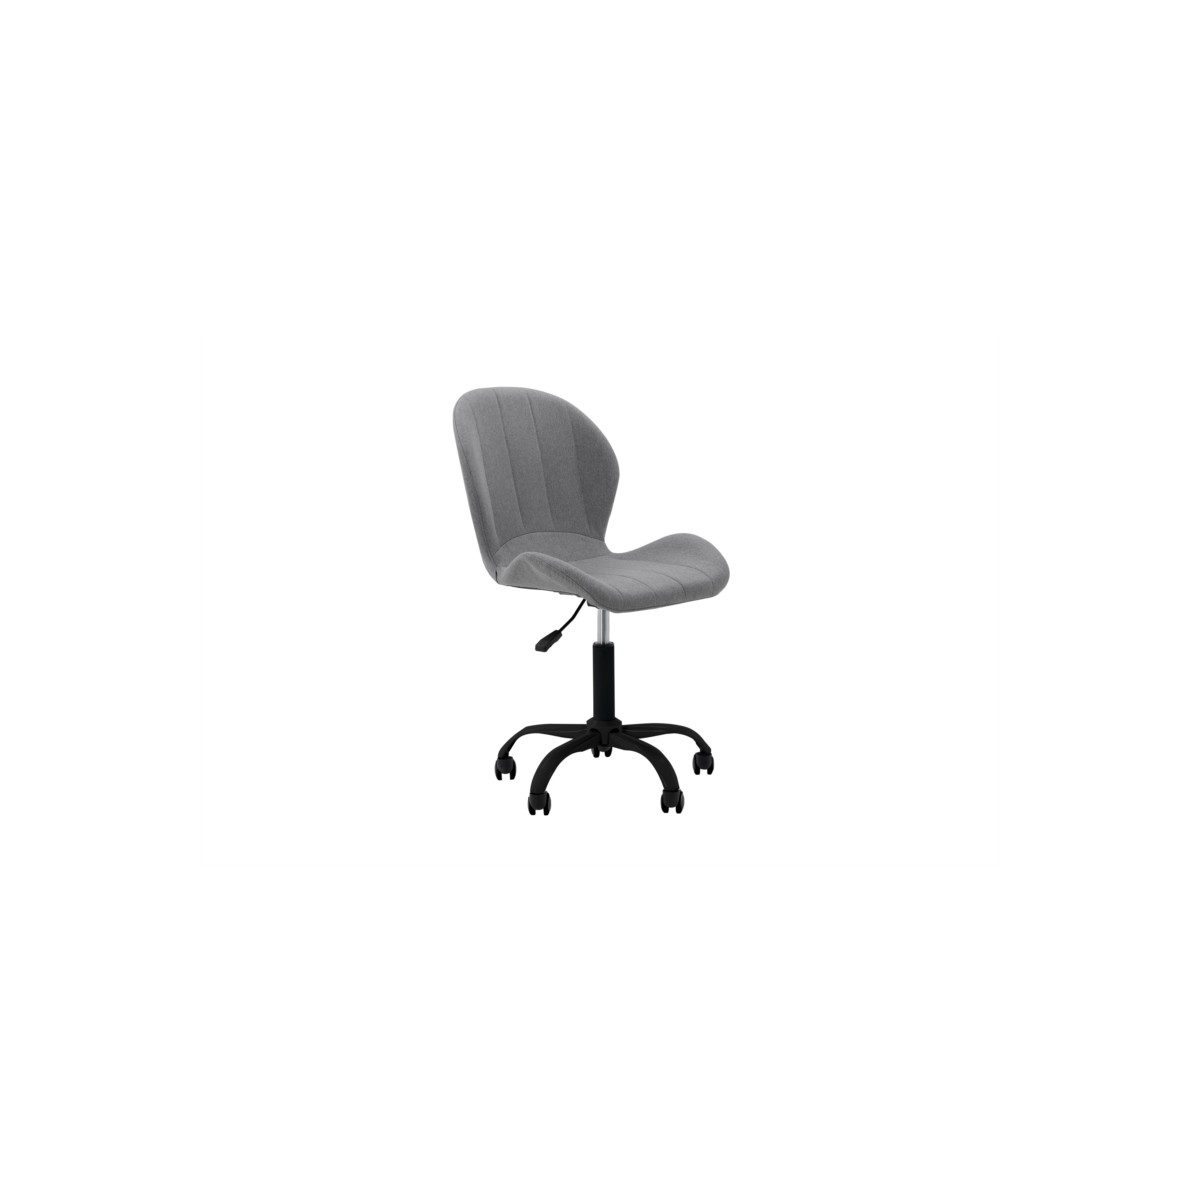 Chaise de bureau ergonomique à roulettes BELOU en tissu (noir)